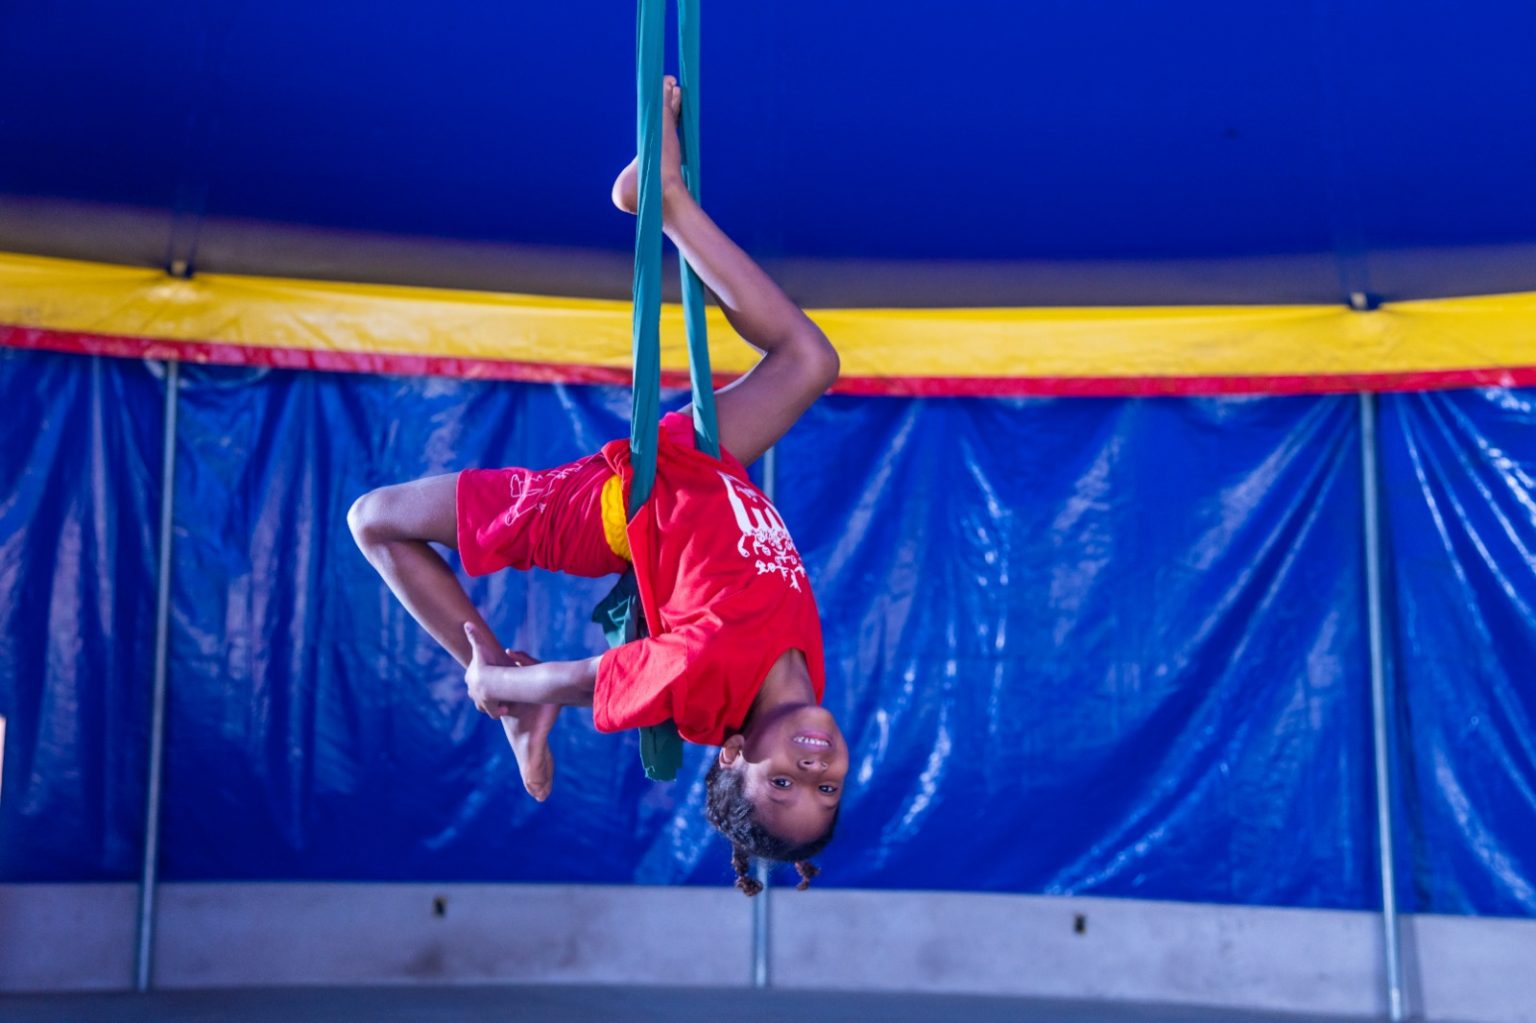 Lona das Artes comemora Dia do Circo com espetáculo gratuito, em Hortolândia